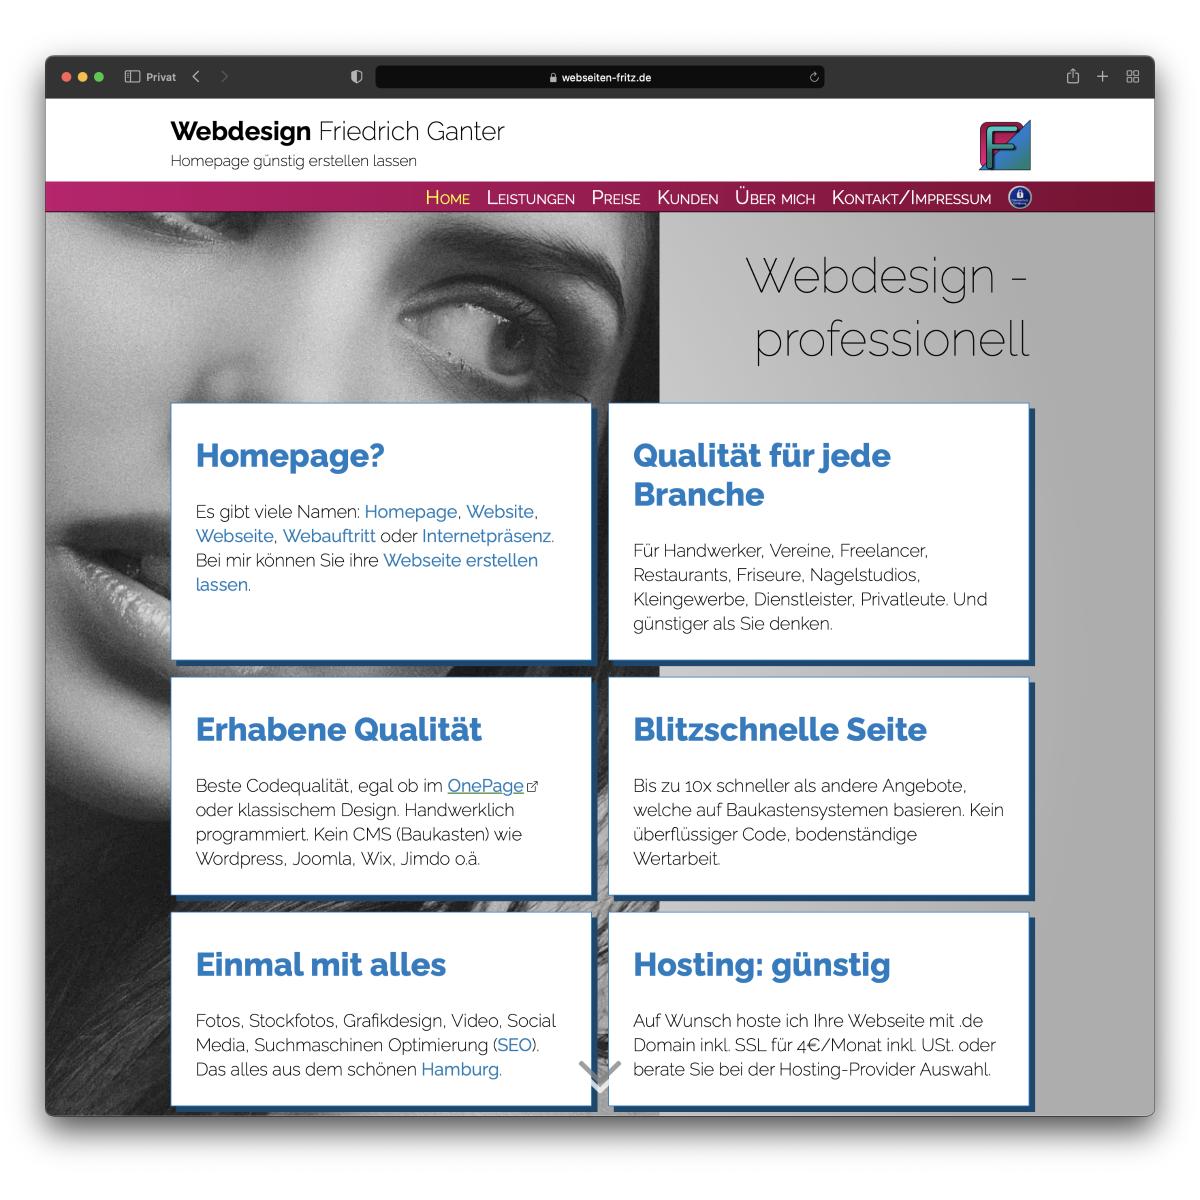 Friedrich Ganter Webdesign, Vierbergen 59 in Hamburg